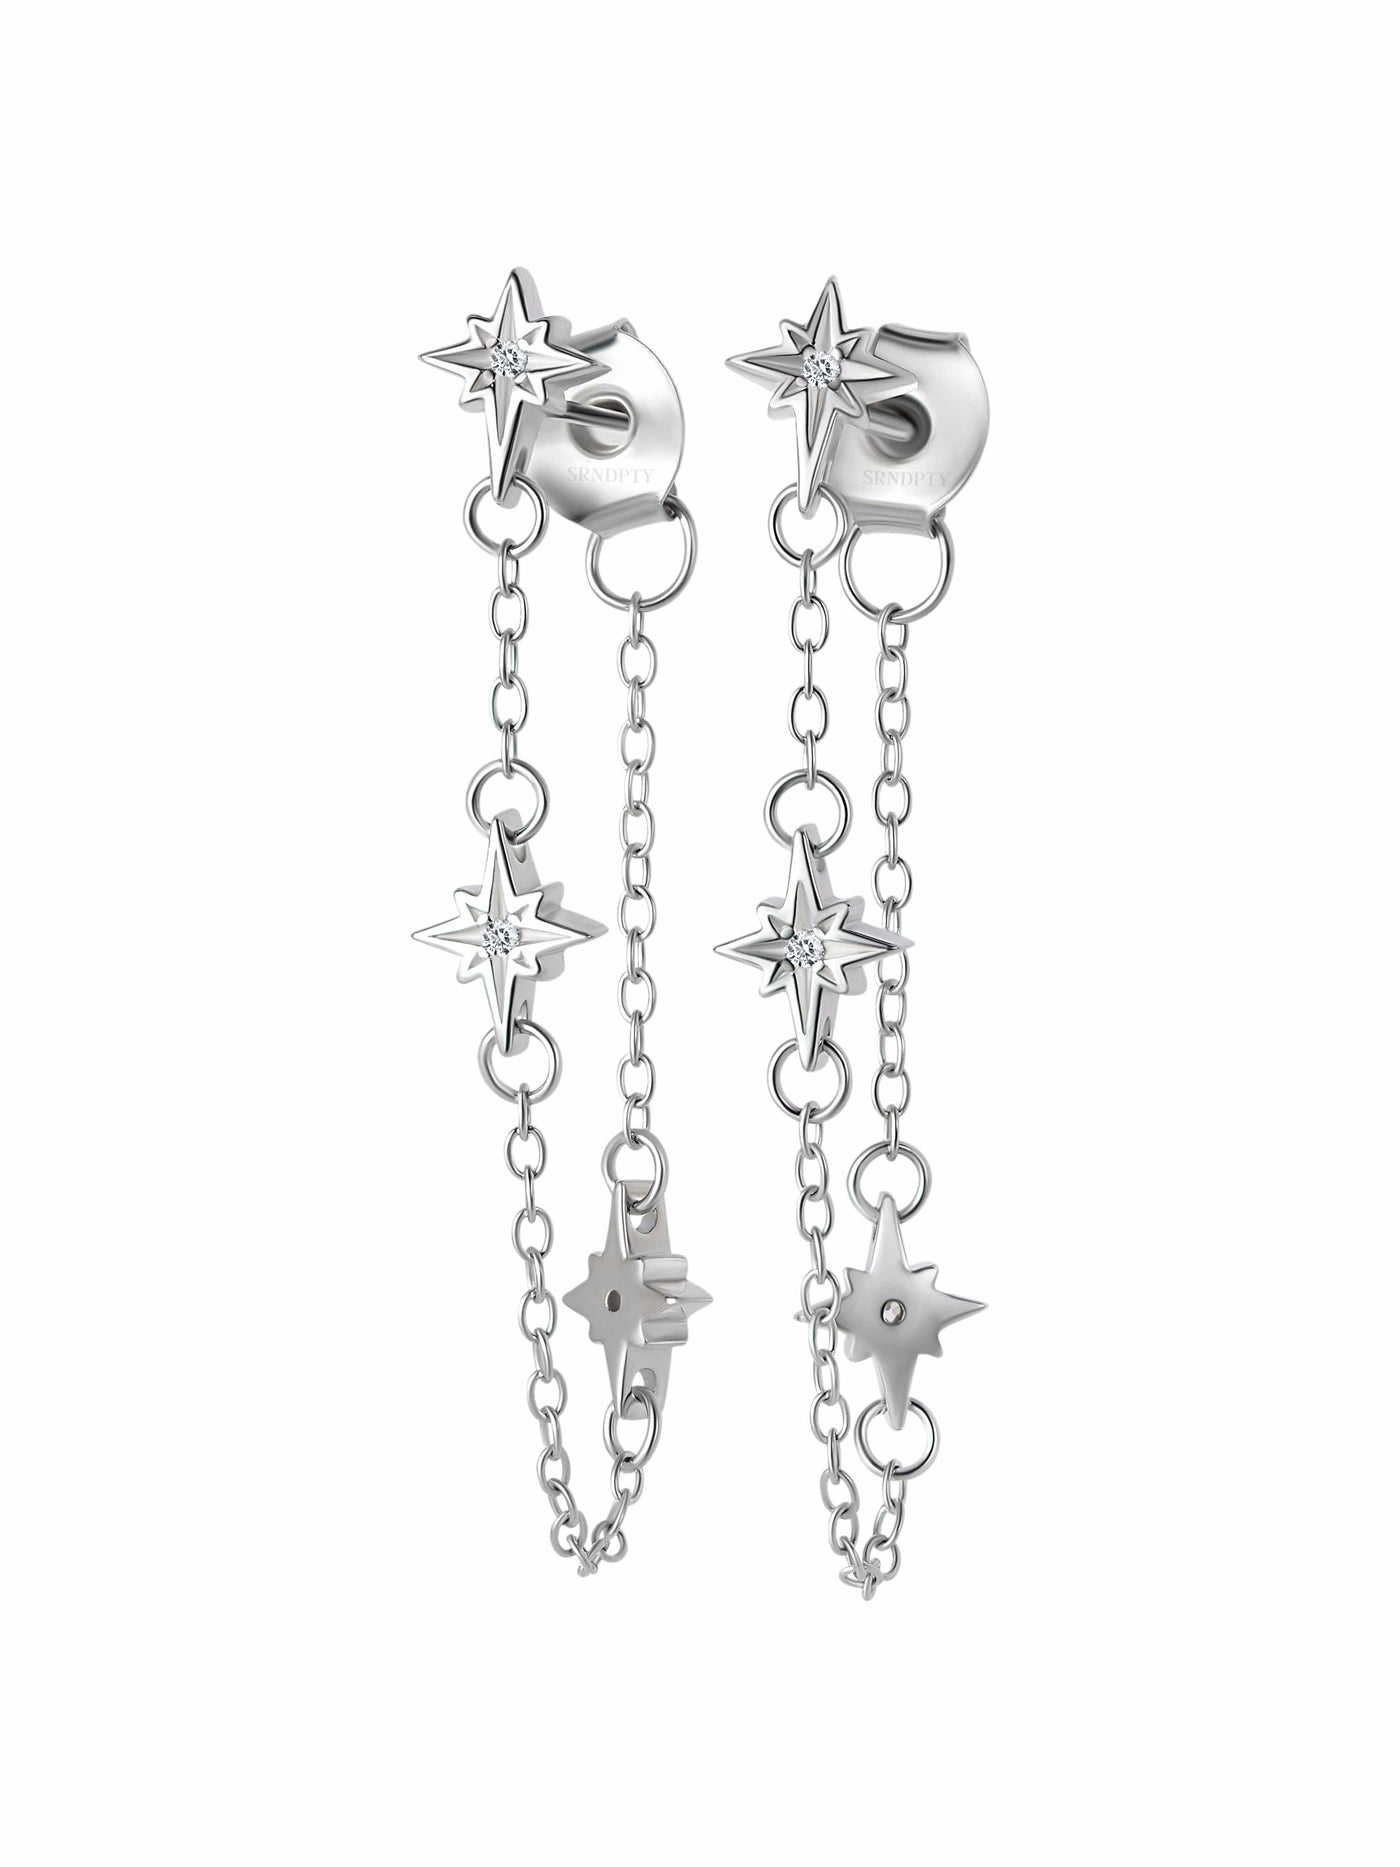 Cosmic chain earrings